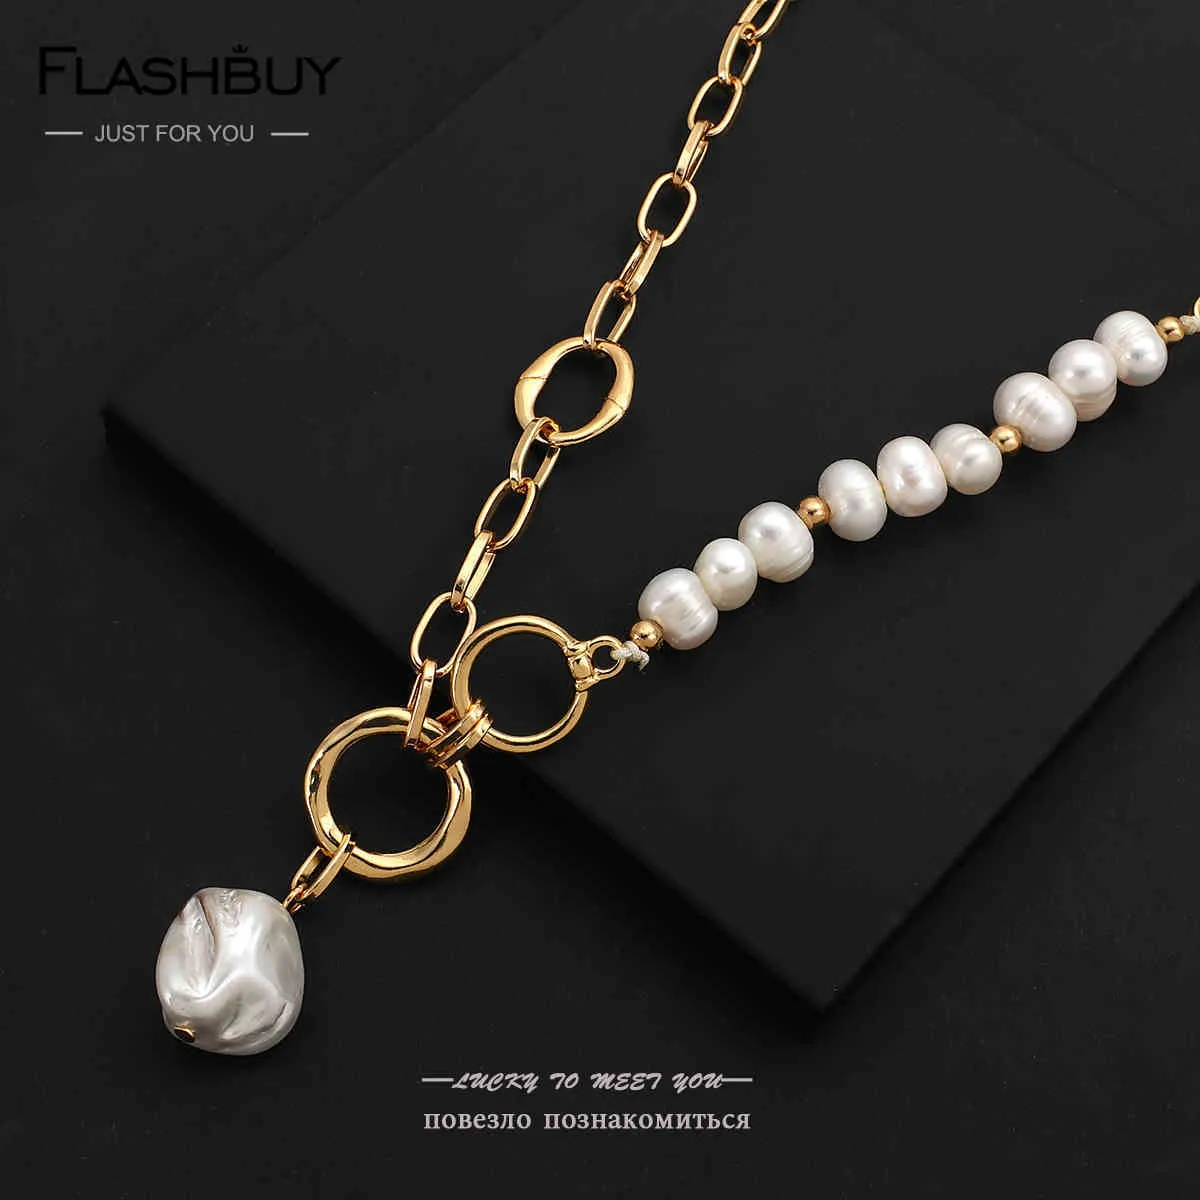 Flashbuy – pendentif irrégulier d'eau douce naturelle pour femmes, chaîne épaisse, cercles de perles baroques, colliers élégants